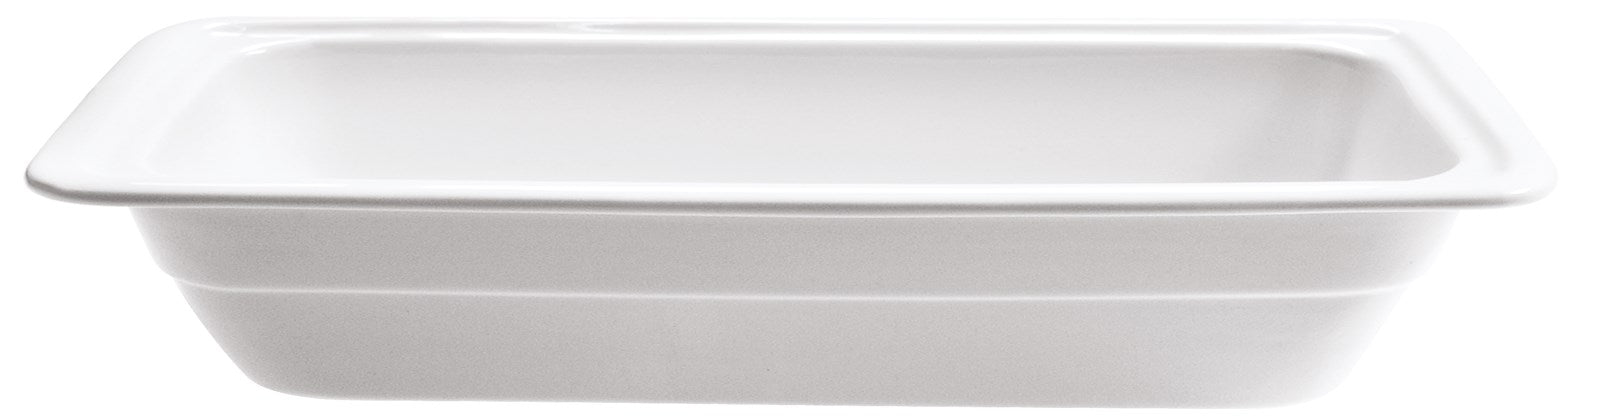 Buffet GN Schalen Porzellan 2/4 53x16.2cm H2cm in Weiss präsentiert im Onlineshop von KAQTU Design AG. Schale ist von Diverse